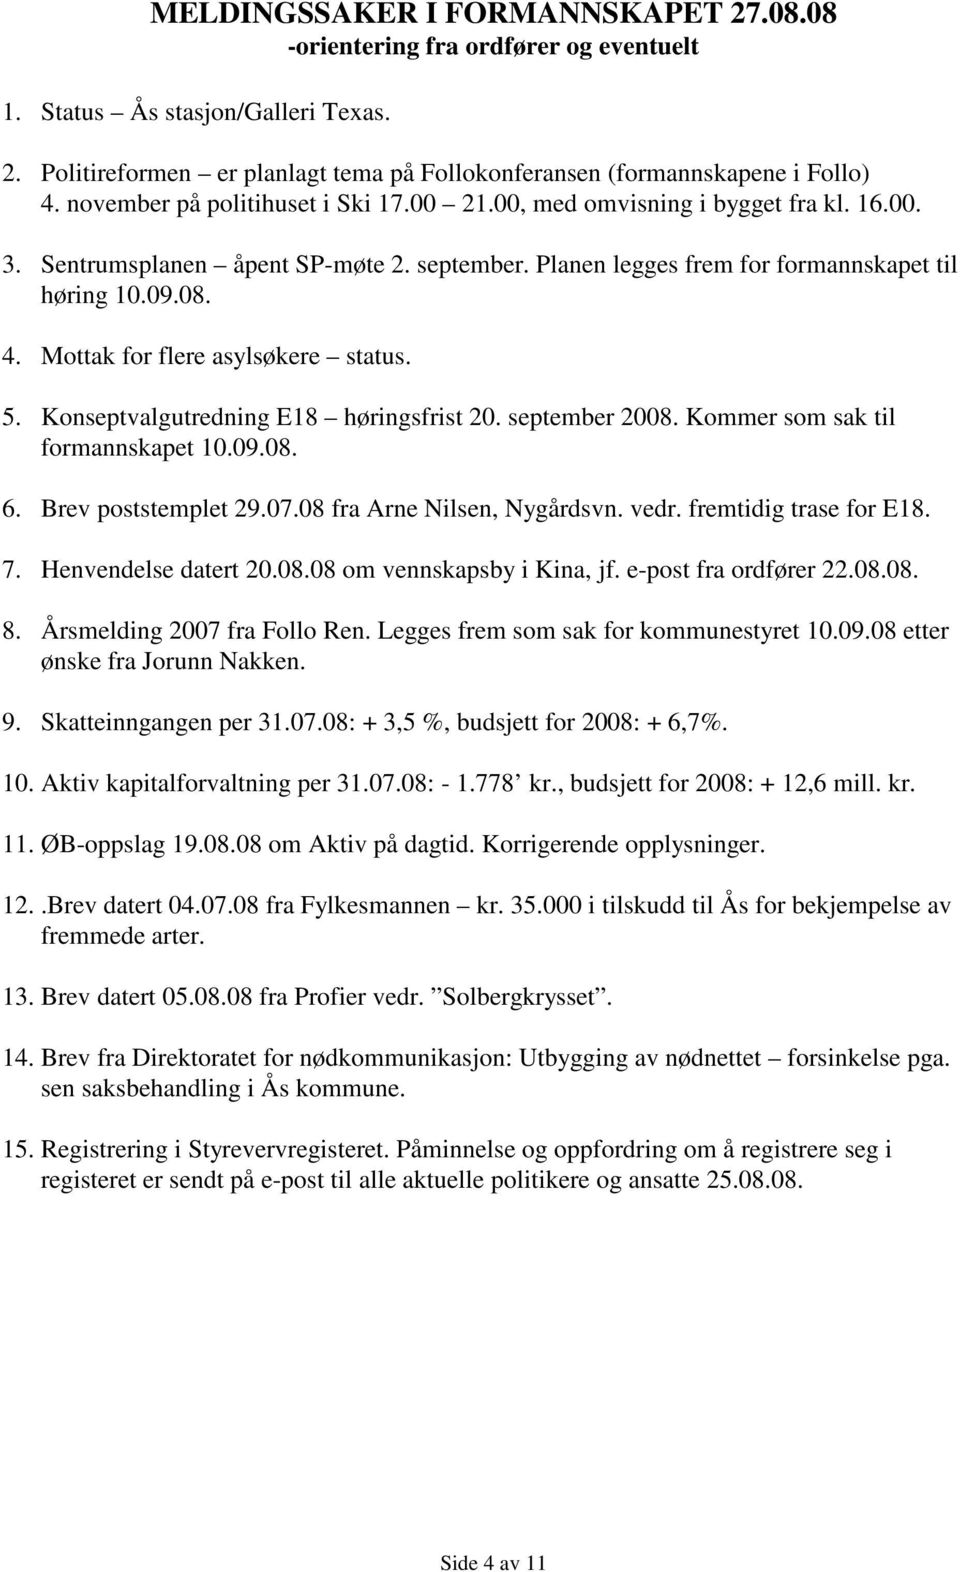 Mottak for flere asylsøkere status. 5. Konseptvalgutredning E18 høringsfrist 20. september 2008. Kommer som sak til formannskapet 10.09.08. 6. Brev poststemplet 29.07.08 fra Arne Nilsen, Nygårdsvn.